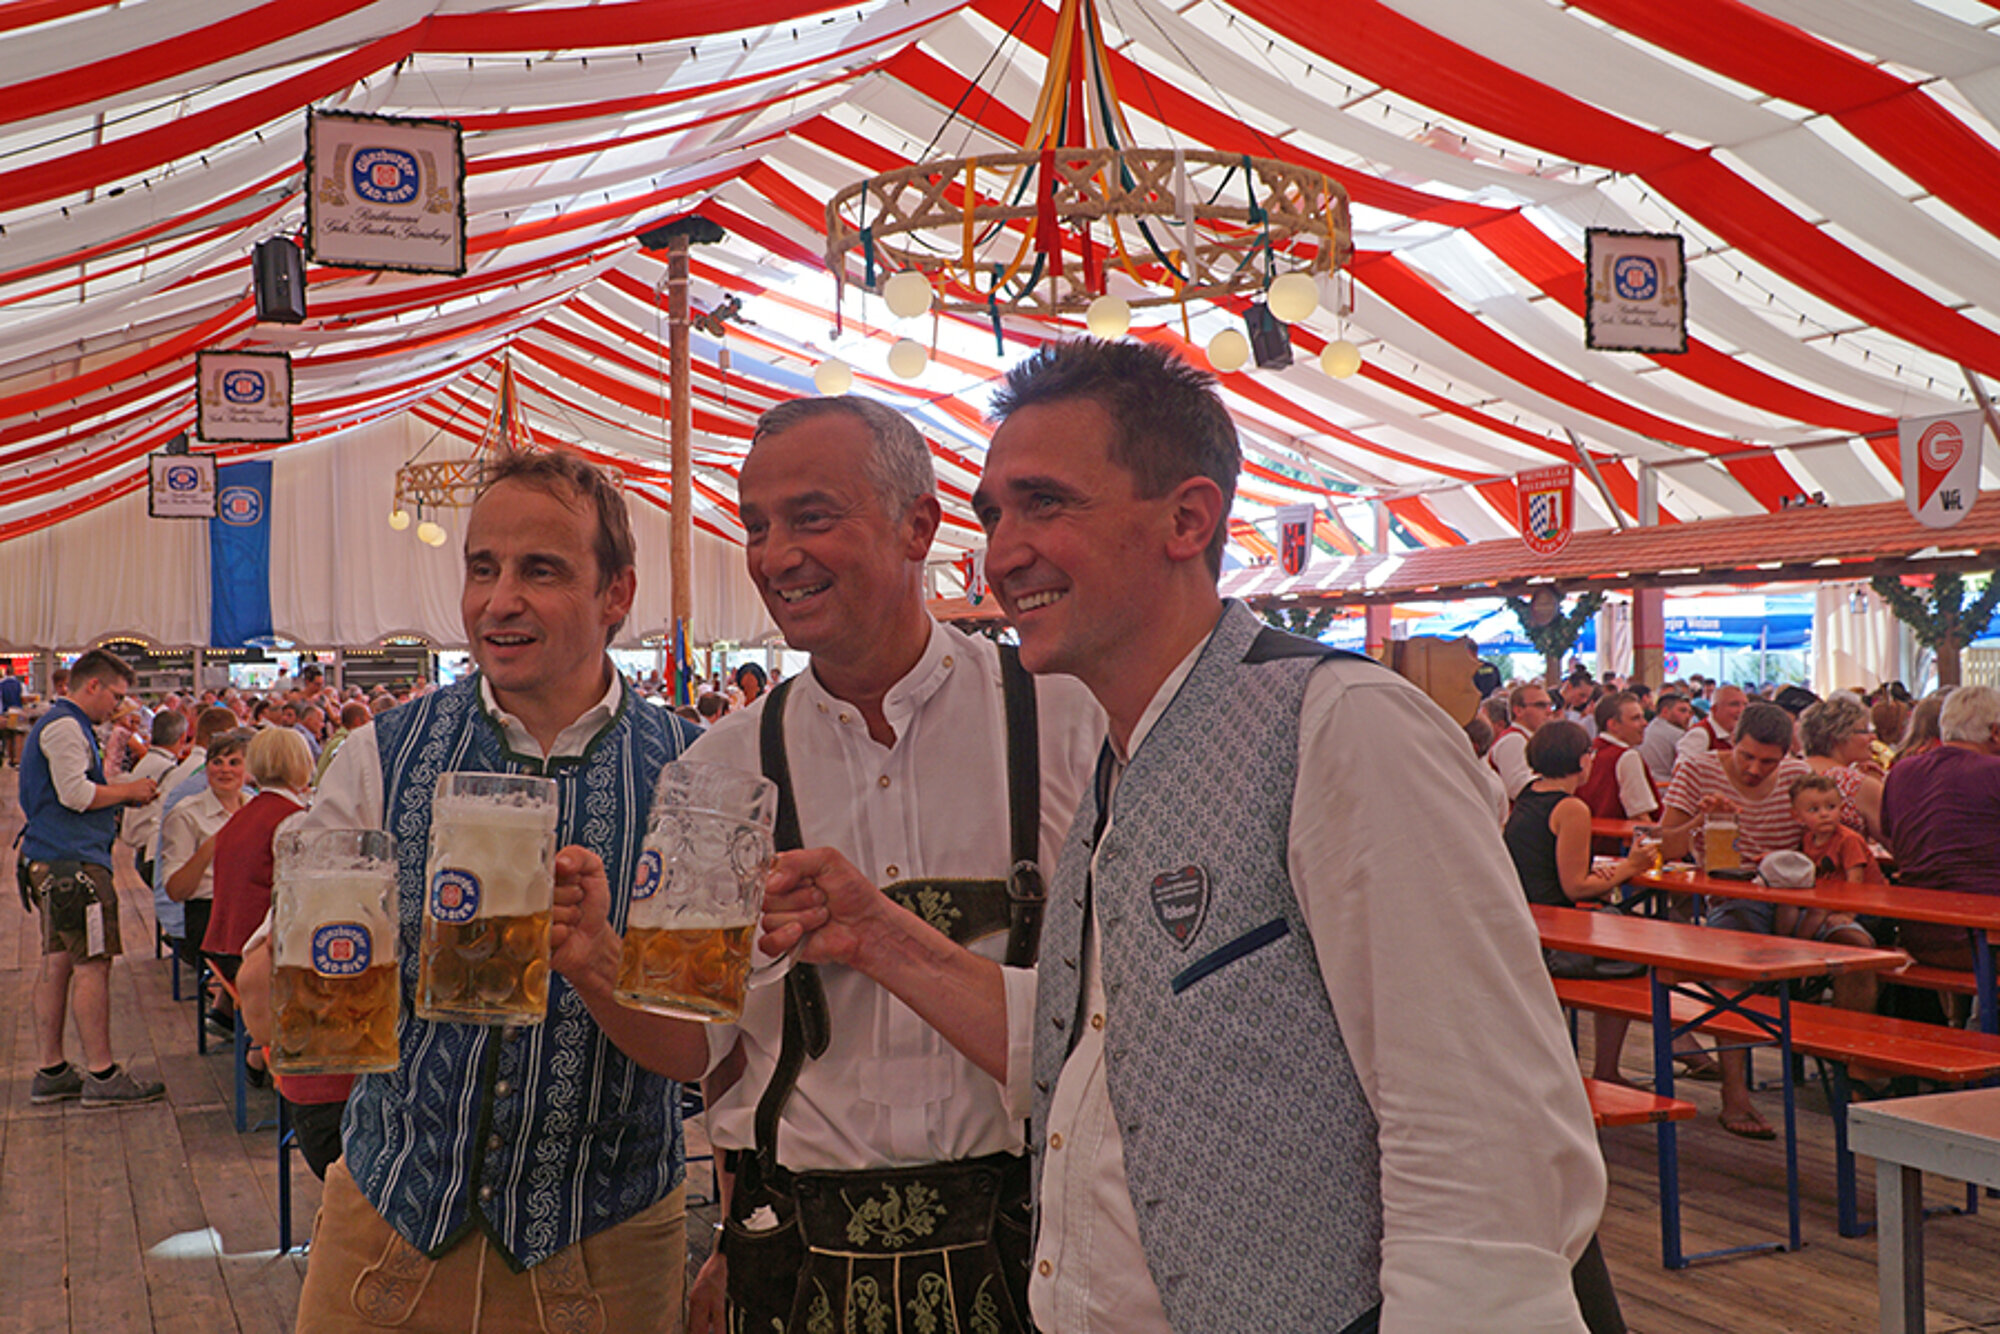 Mit dem Bieranstich durch Michael Hahn, OB Gerhard Jauernig und Georg Bucher (v. l.) im Festzelt wird das bunte Festtreiben offiziell eröffnet. Foto: Julia Ehrlich/Stadt Günzburg